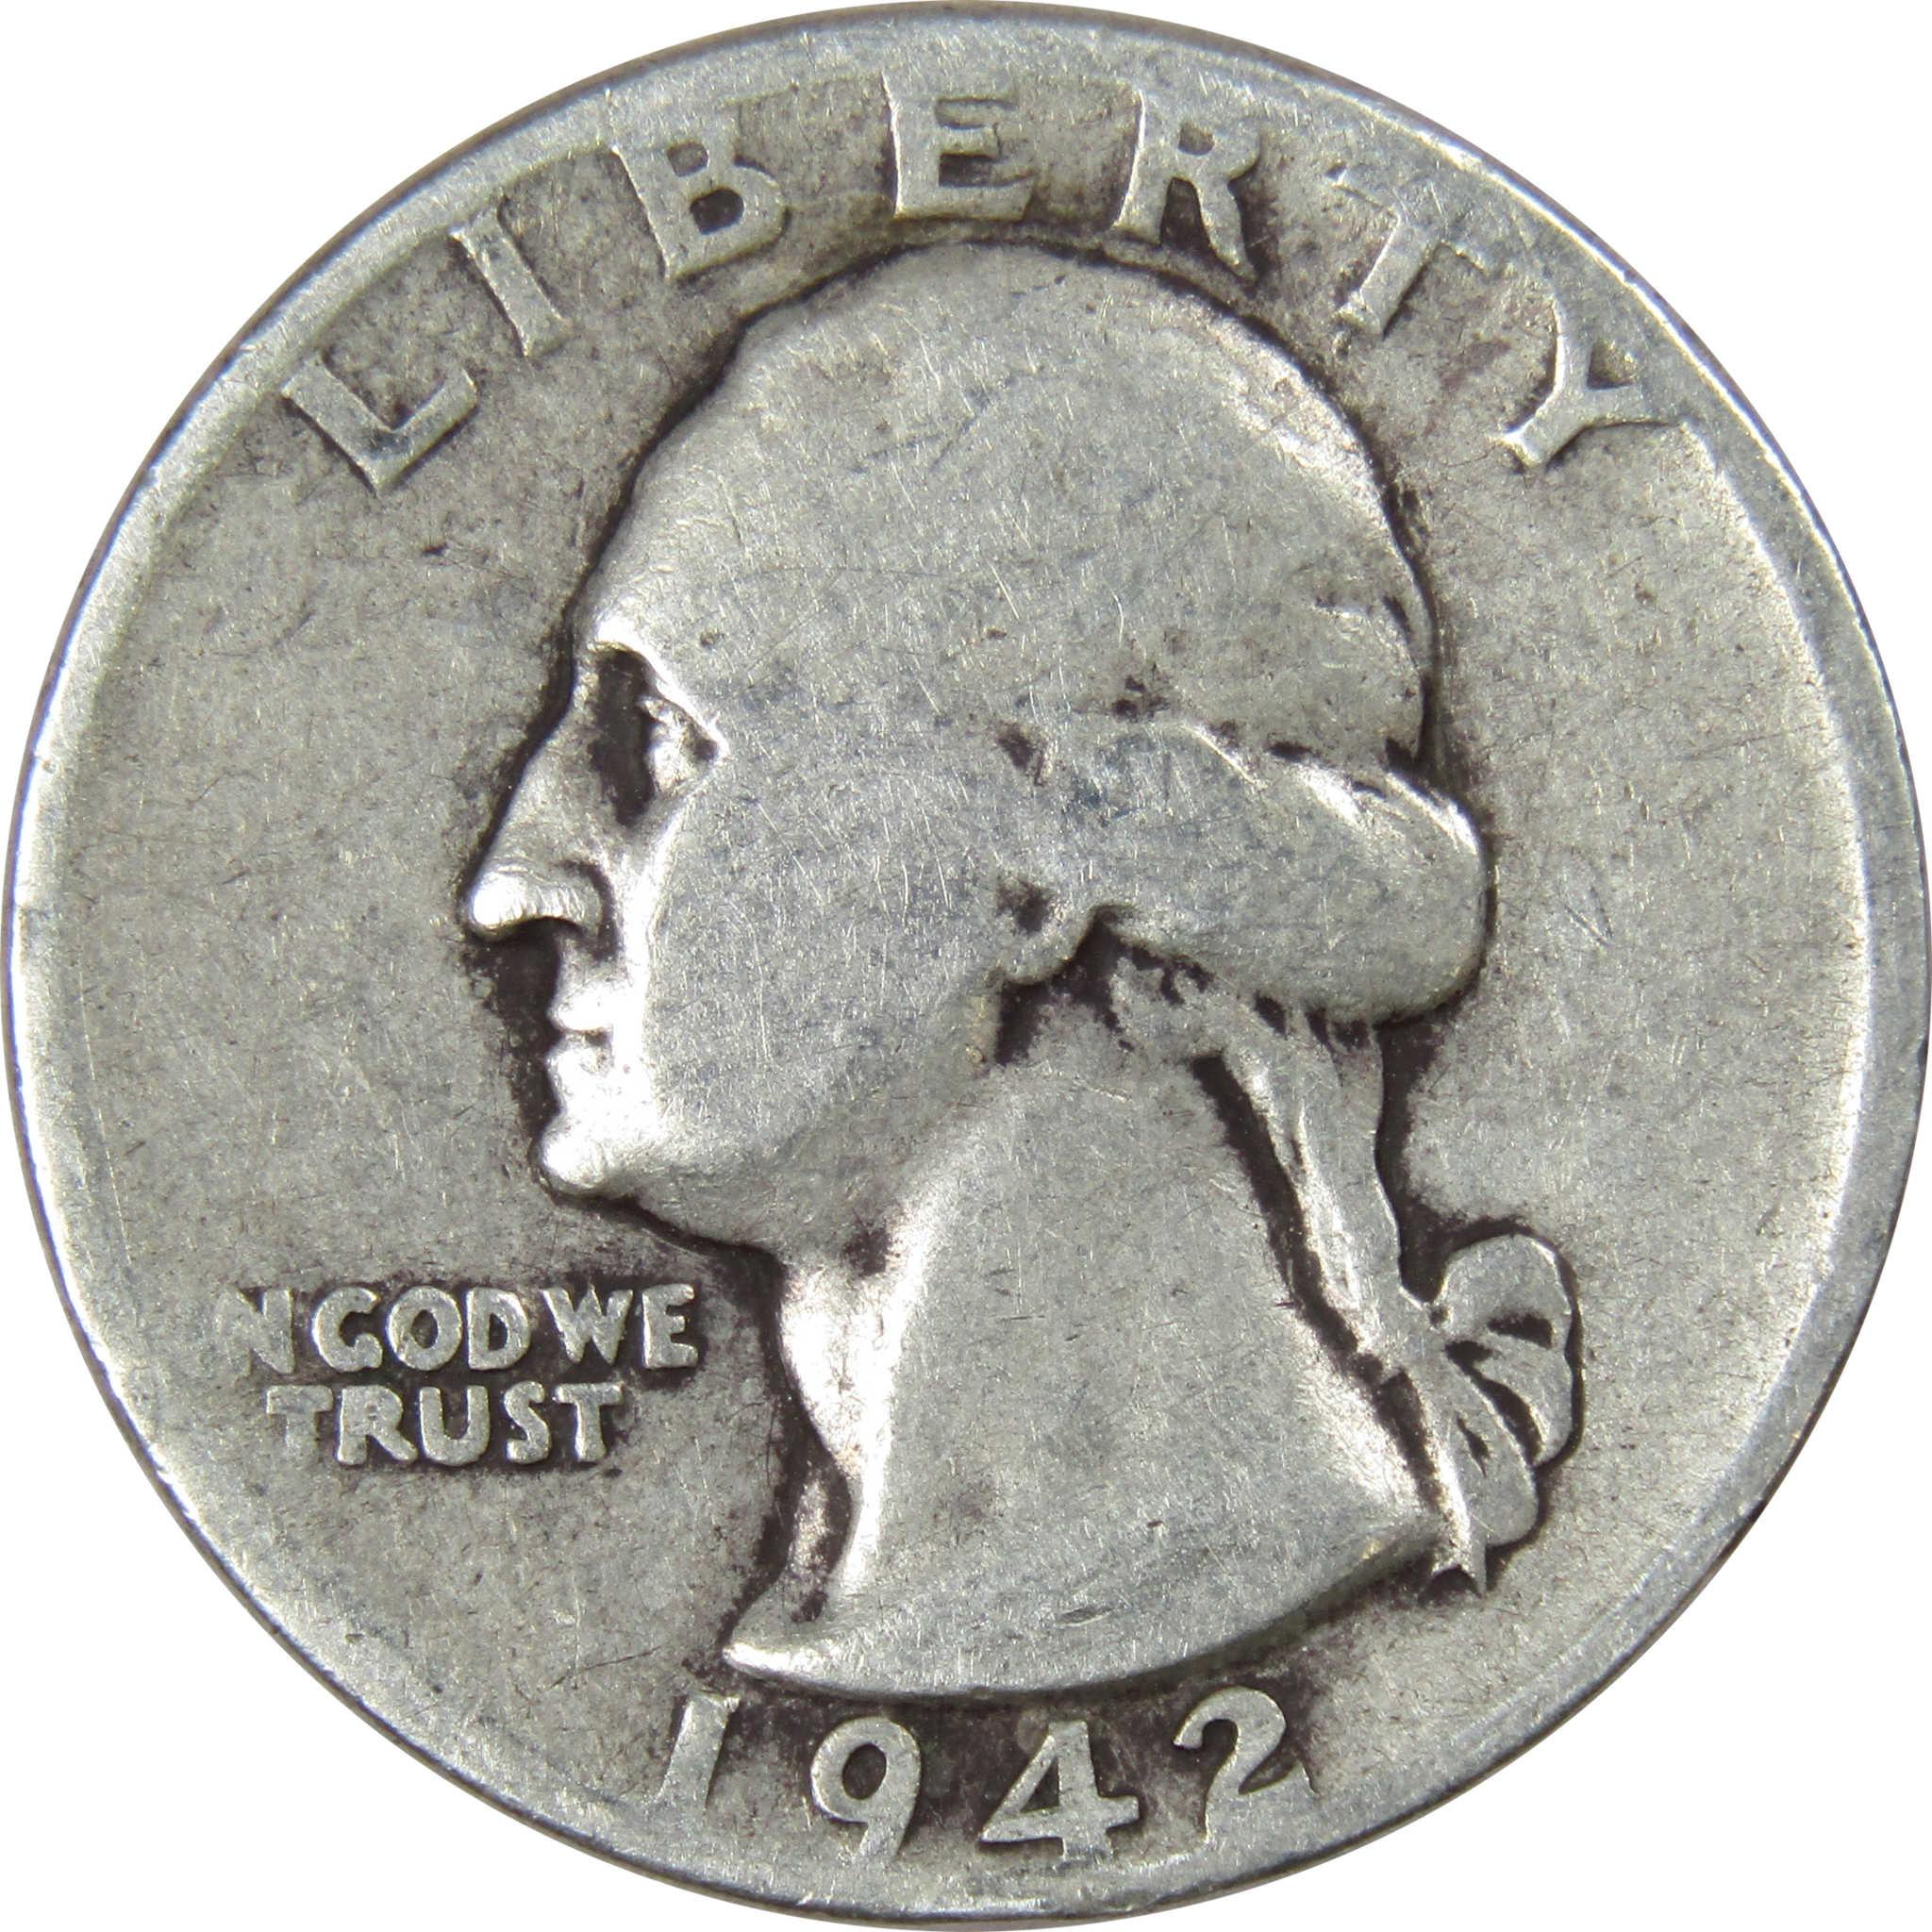 1942 D Washington Quarter AG About Good 90% Silver 25c US Coin Collectible